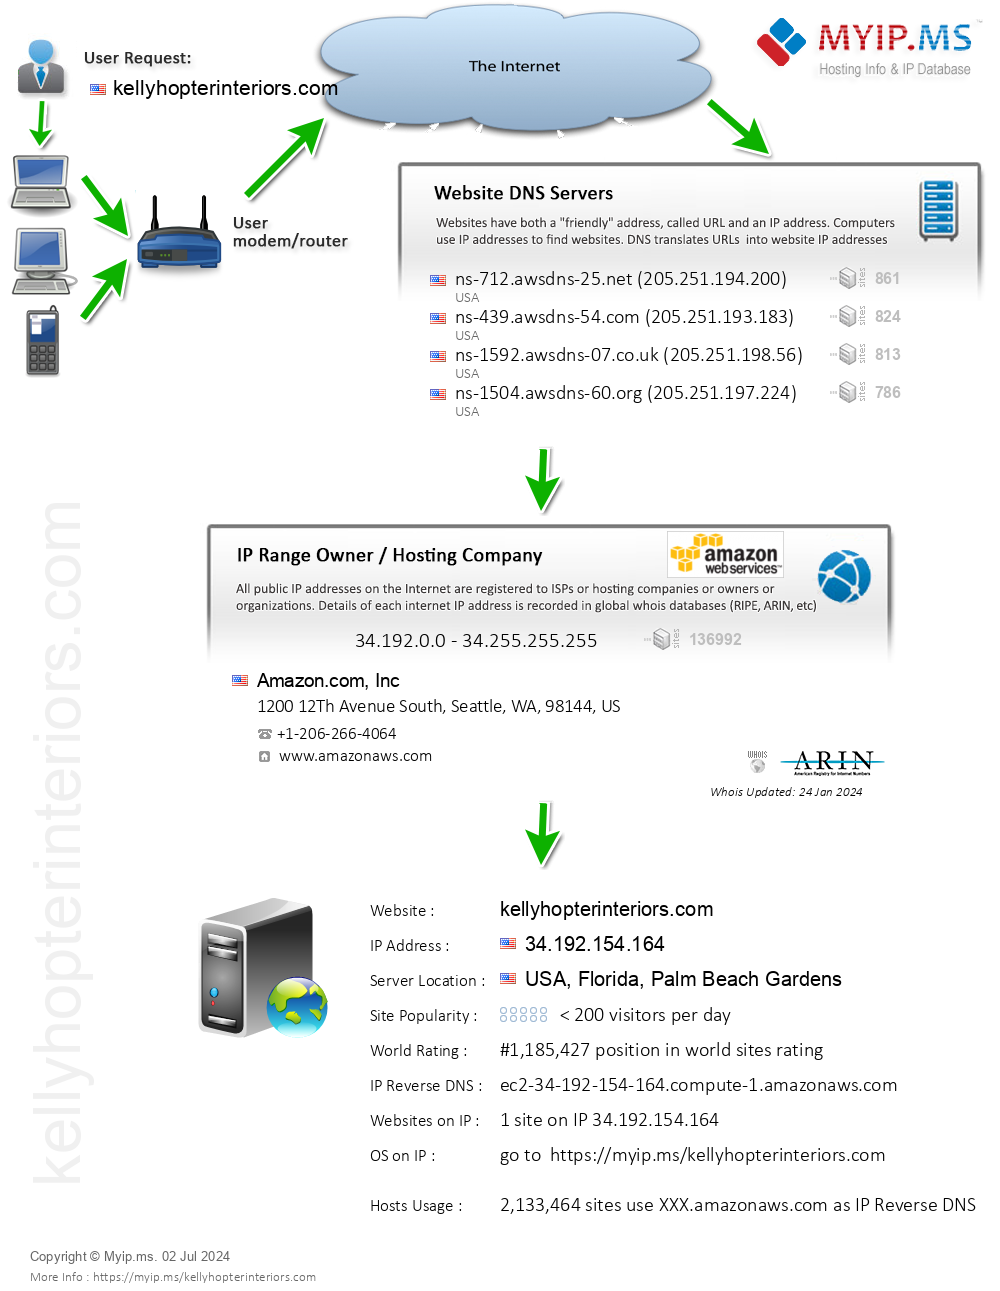 Kellyhopterinteriors.com - Website Hosting Visual IP Diagram